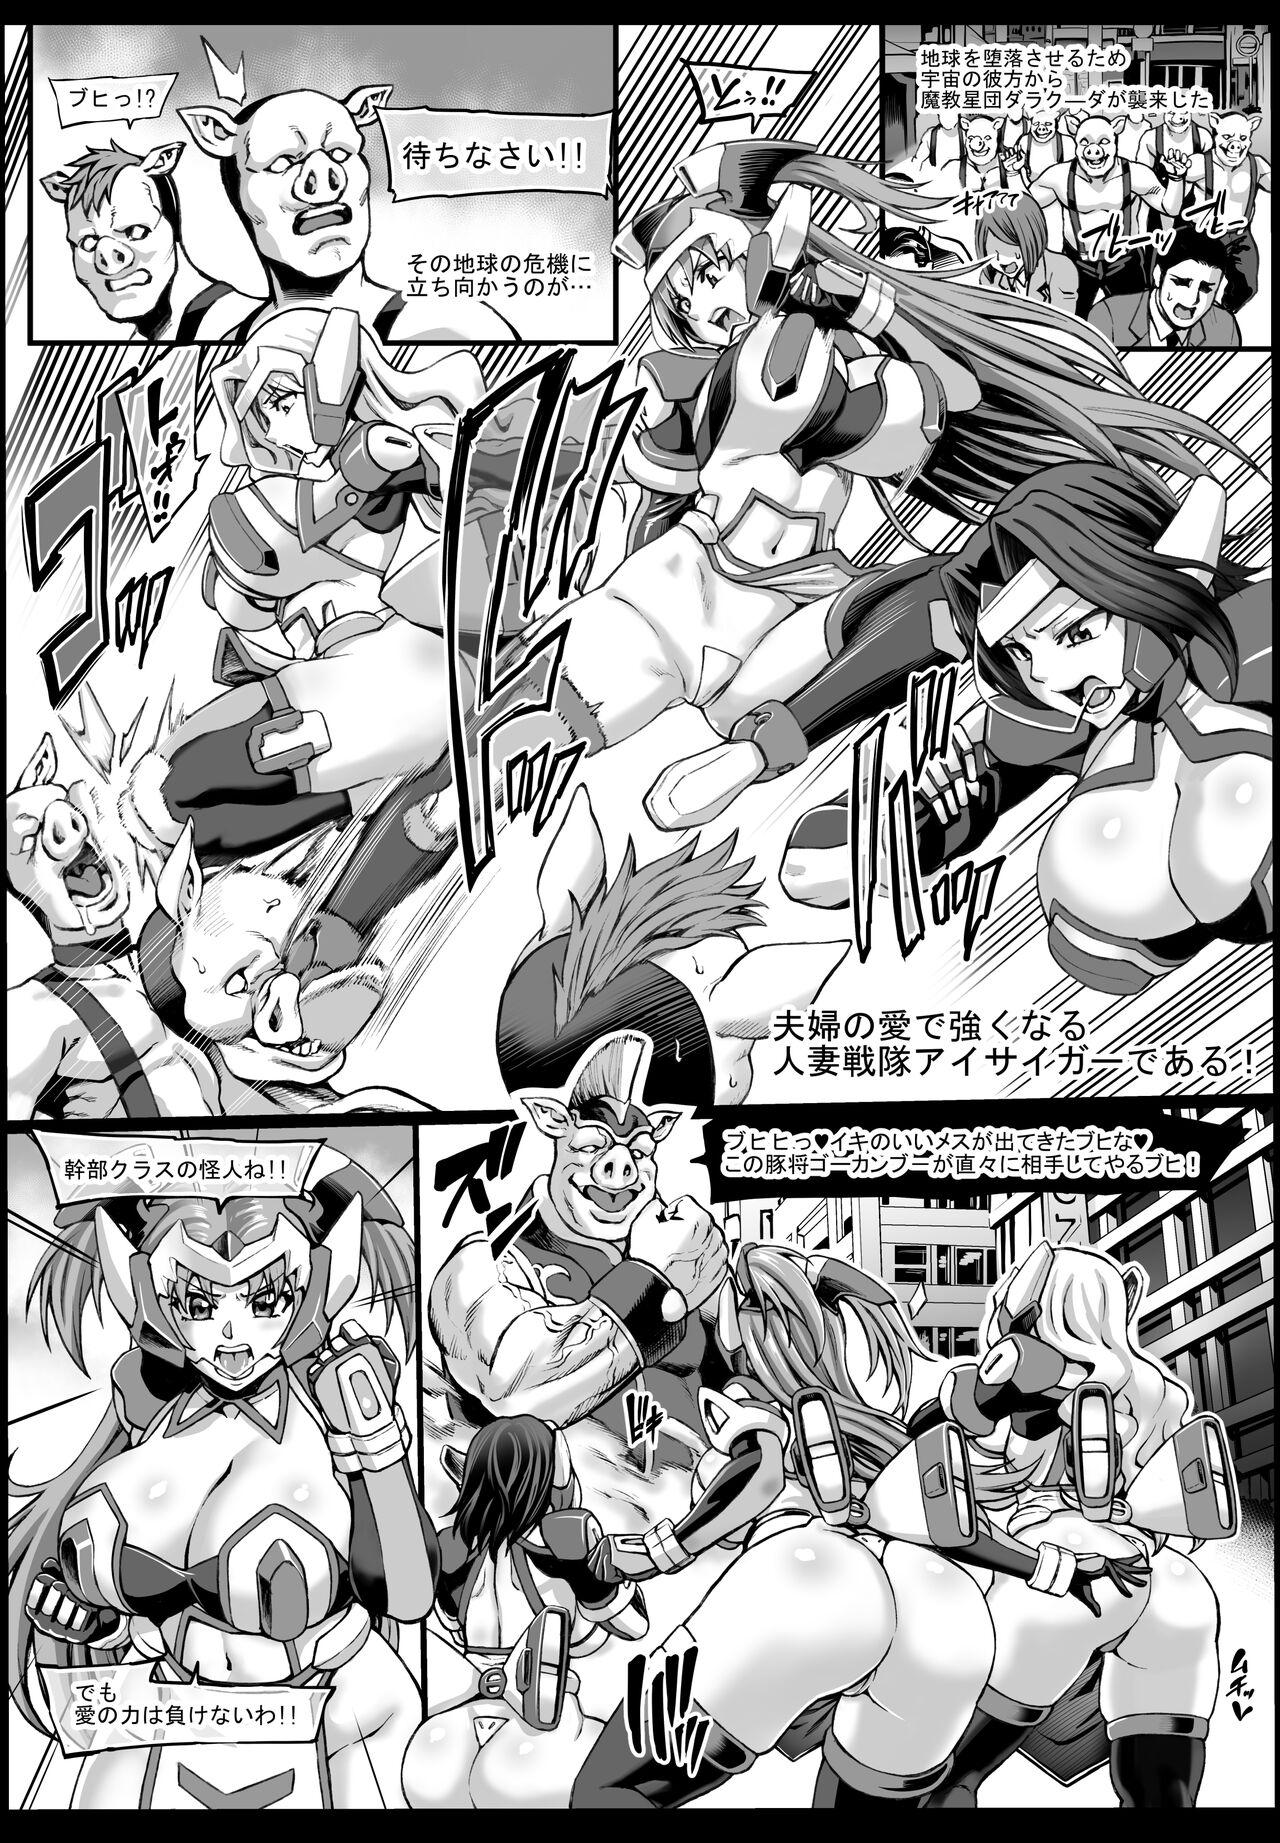 Free Blowjobs Hitozuma Sentai Aisaiger Short Comic Blow Jobs - Picture 1